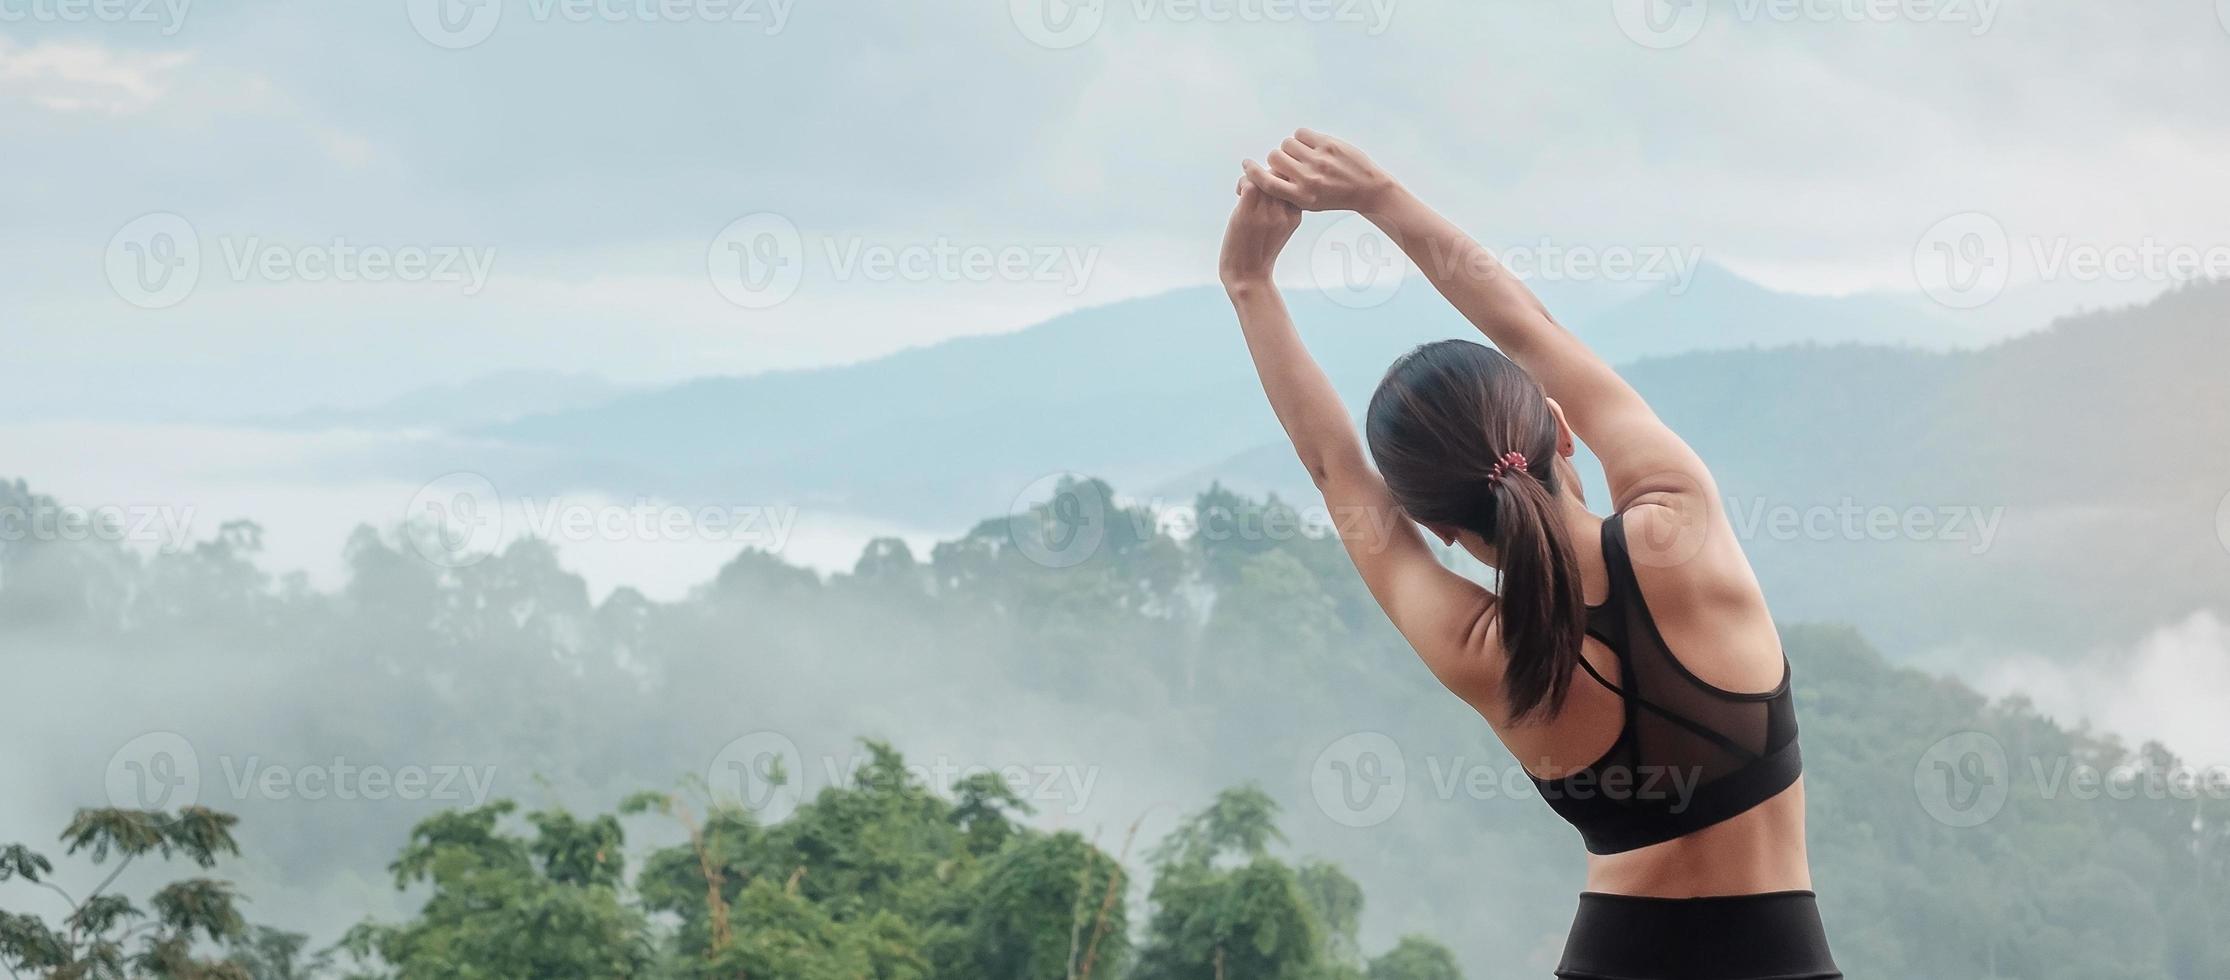 esercizio di donna atleta al mattino, giovane donna fitness che allunga i muscoli contro la vista sulle montagne, riscaldamento pronto per correre o fare jogging. concetti di allenamento, benessere e ragazza sportiva foto